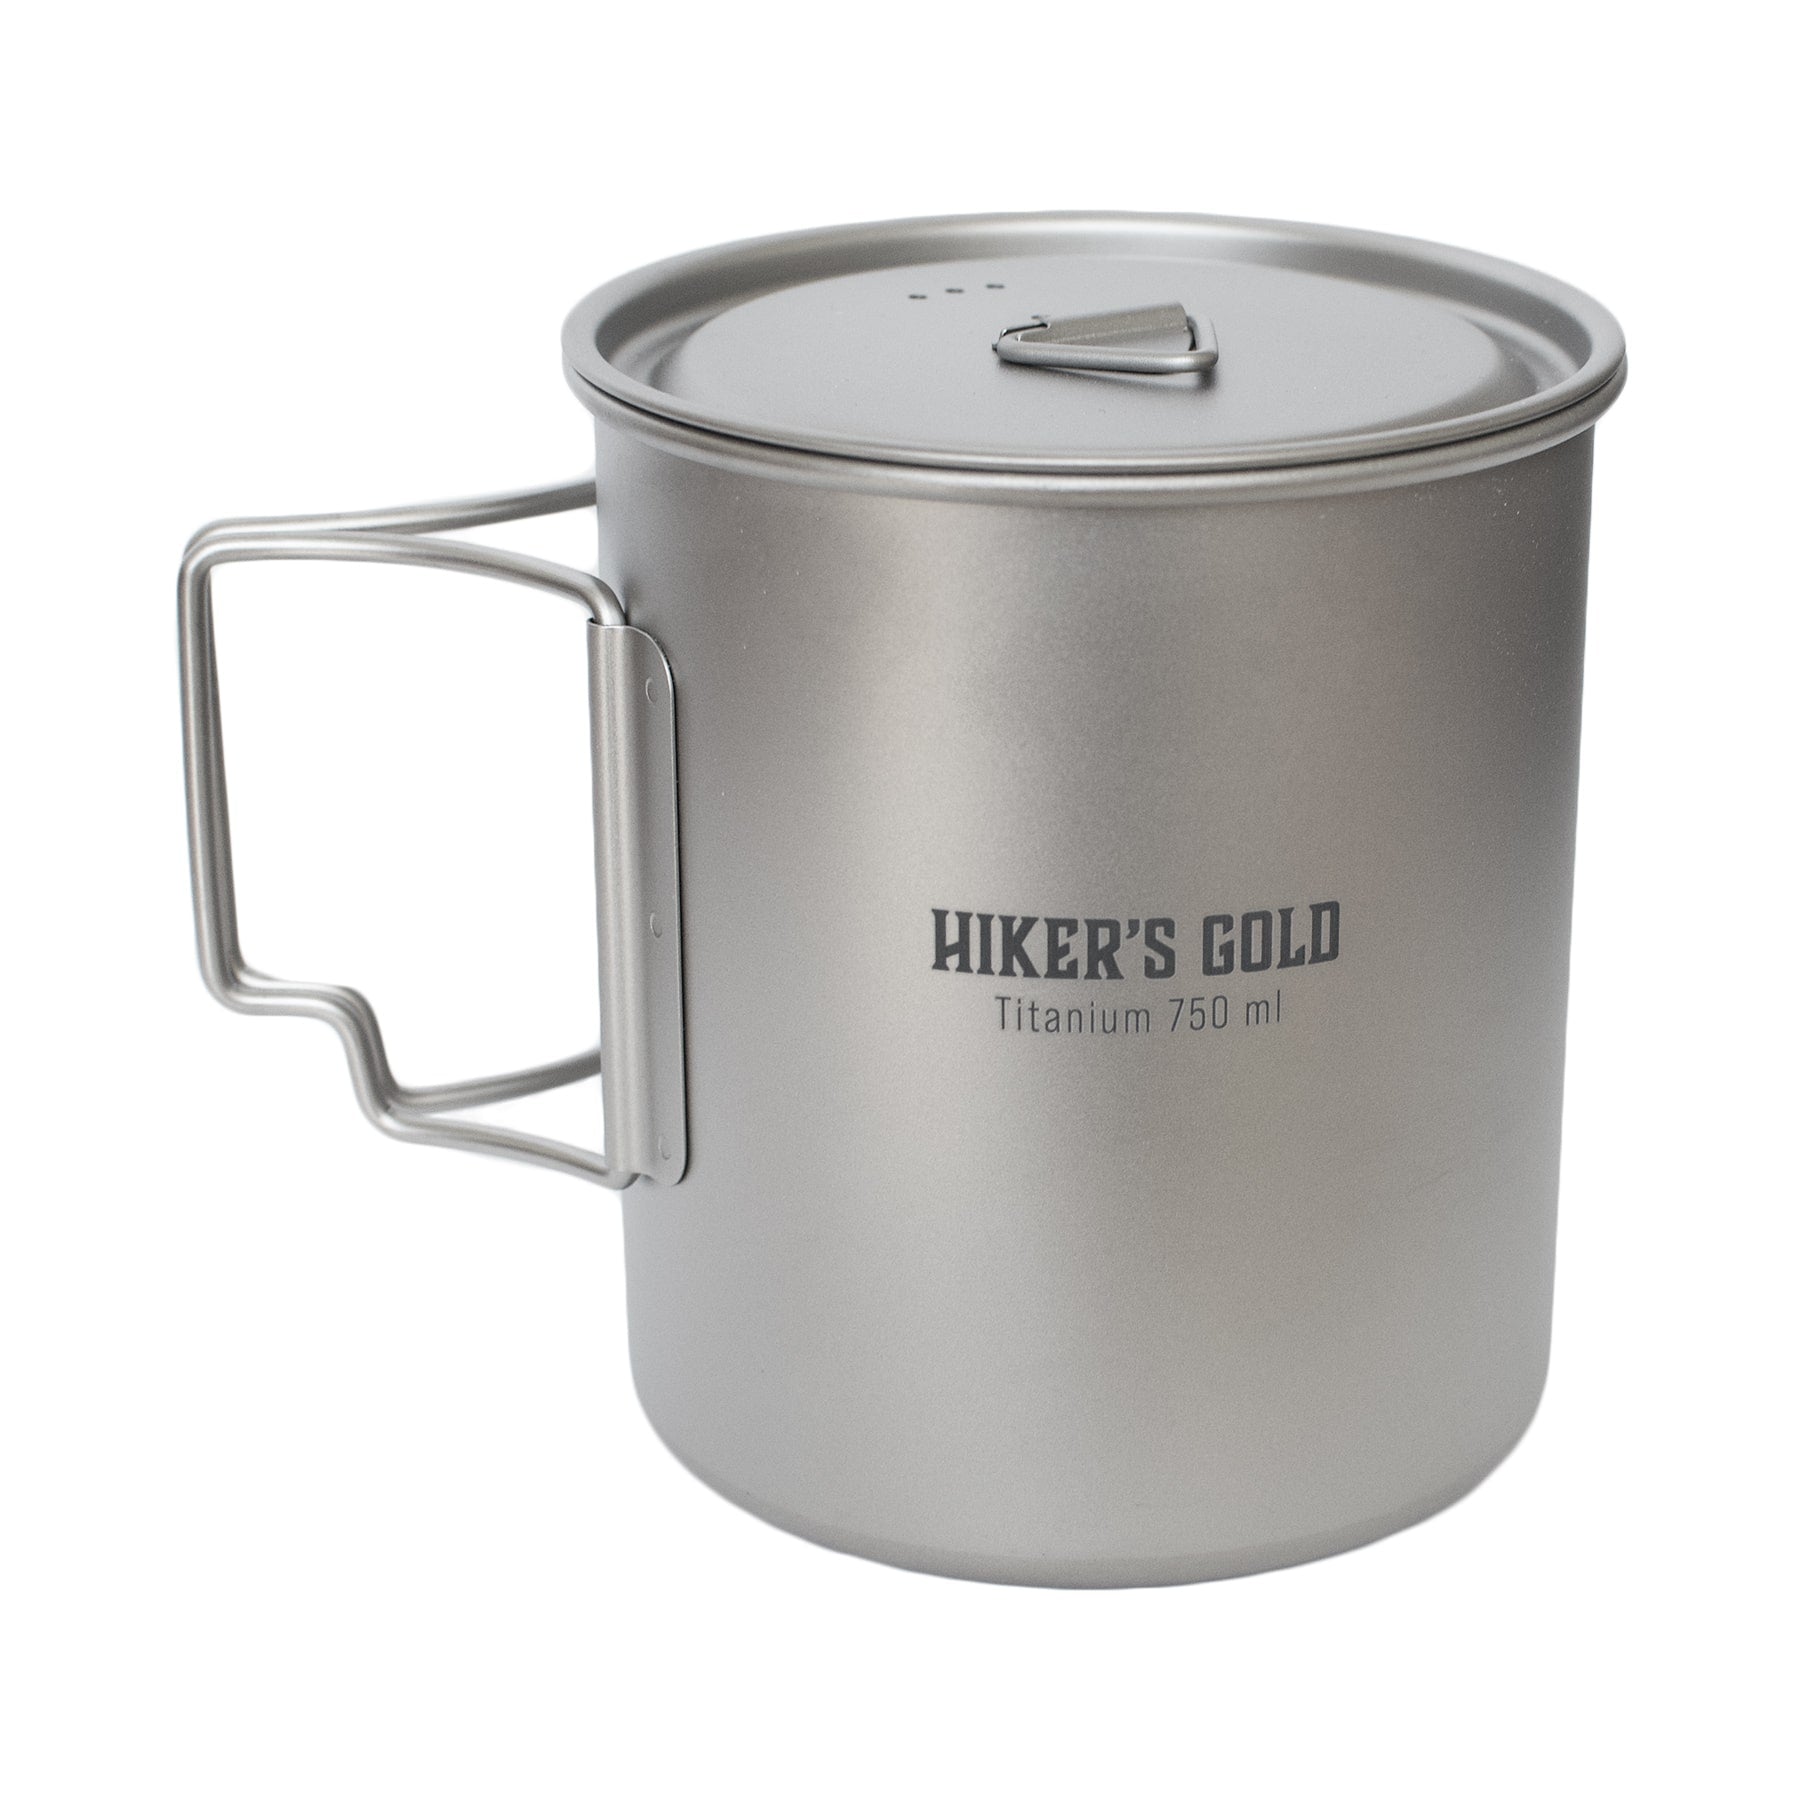 Hiker's Gold 750 ml Ultralight Titanium Pot